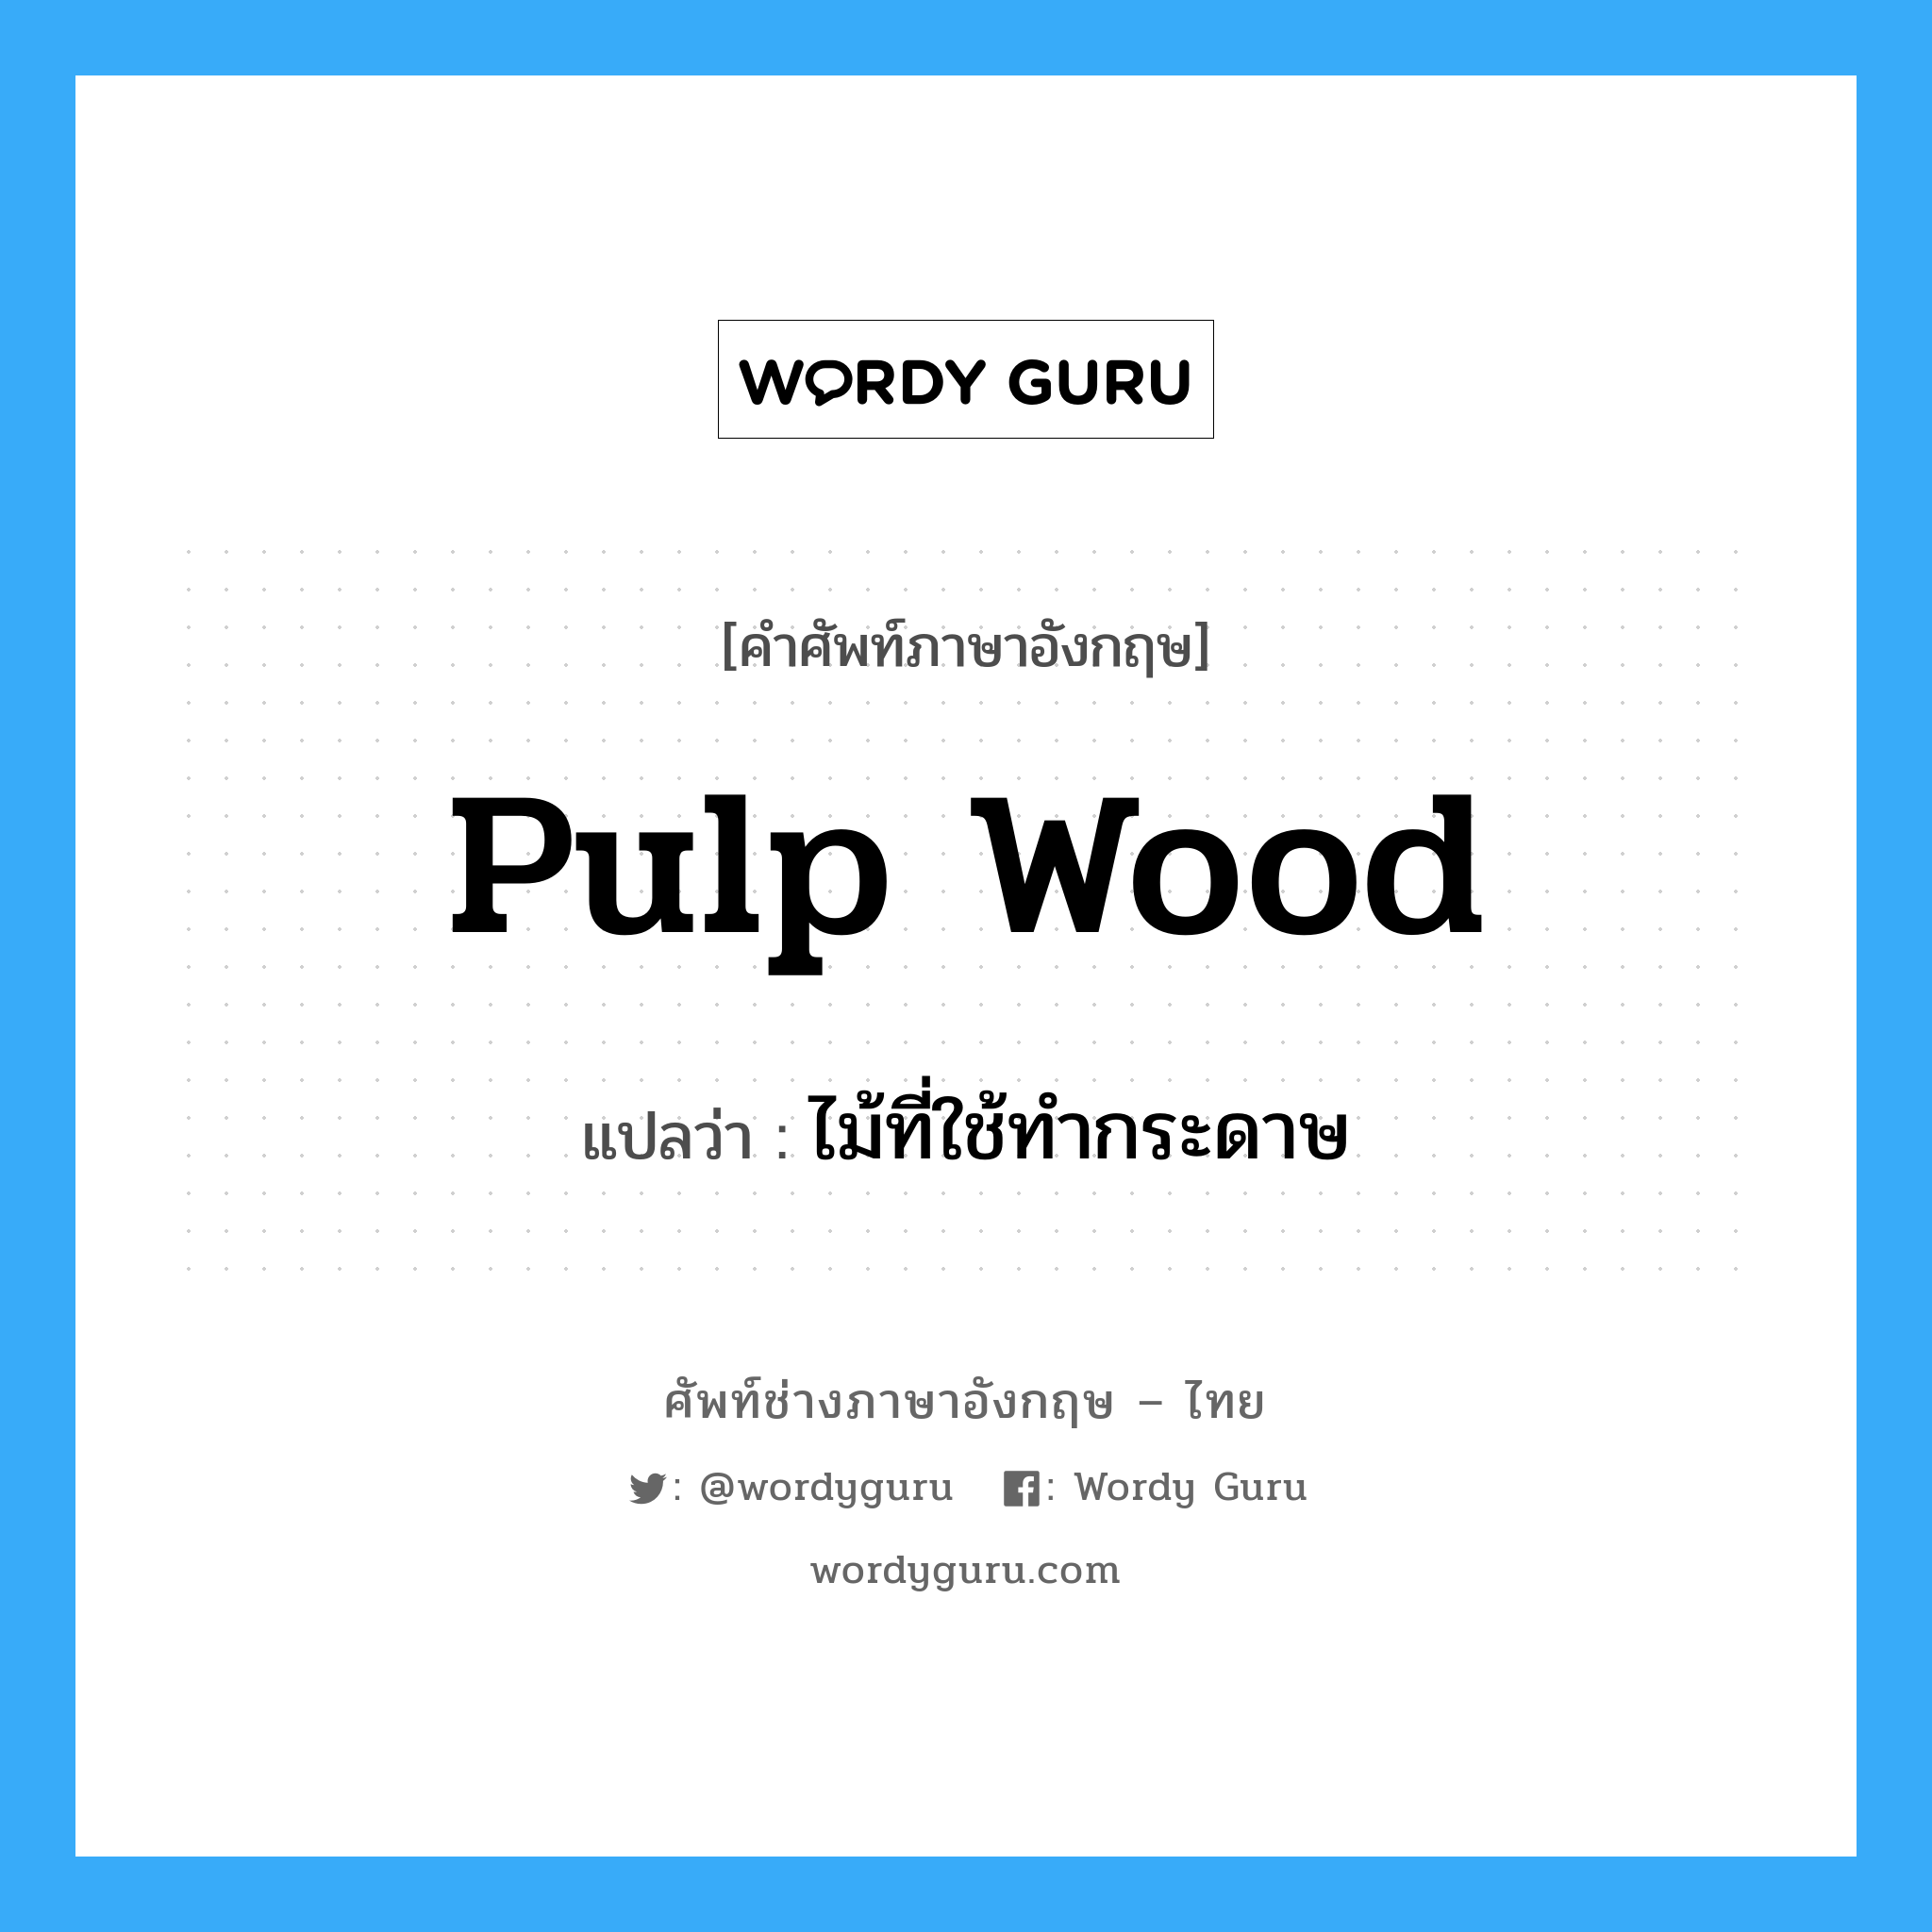 pulp wood แปลว่า?, คำศัพท์ช่างภาษาอังกฤษ - ไทย pulp wood คำศัพท์ภาษาอังกฤษ pulp wood แปลว่า ไม้ที่ใช้ทำกระดาษ